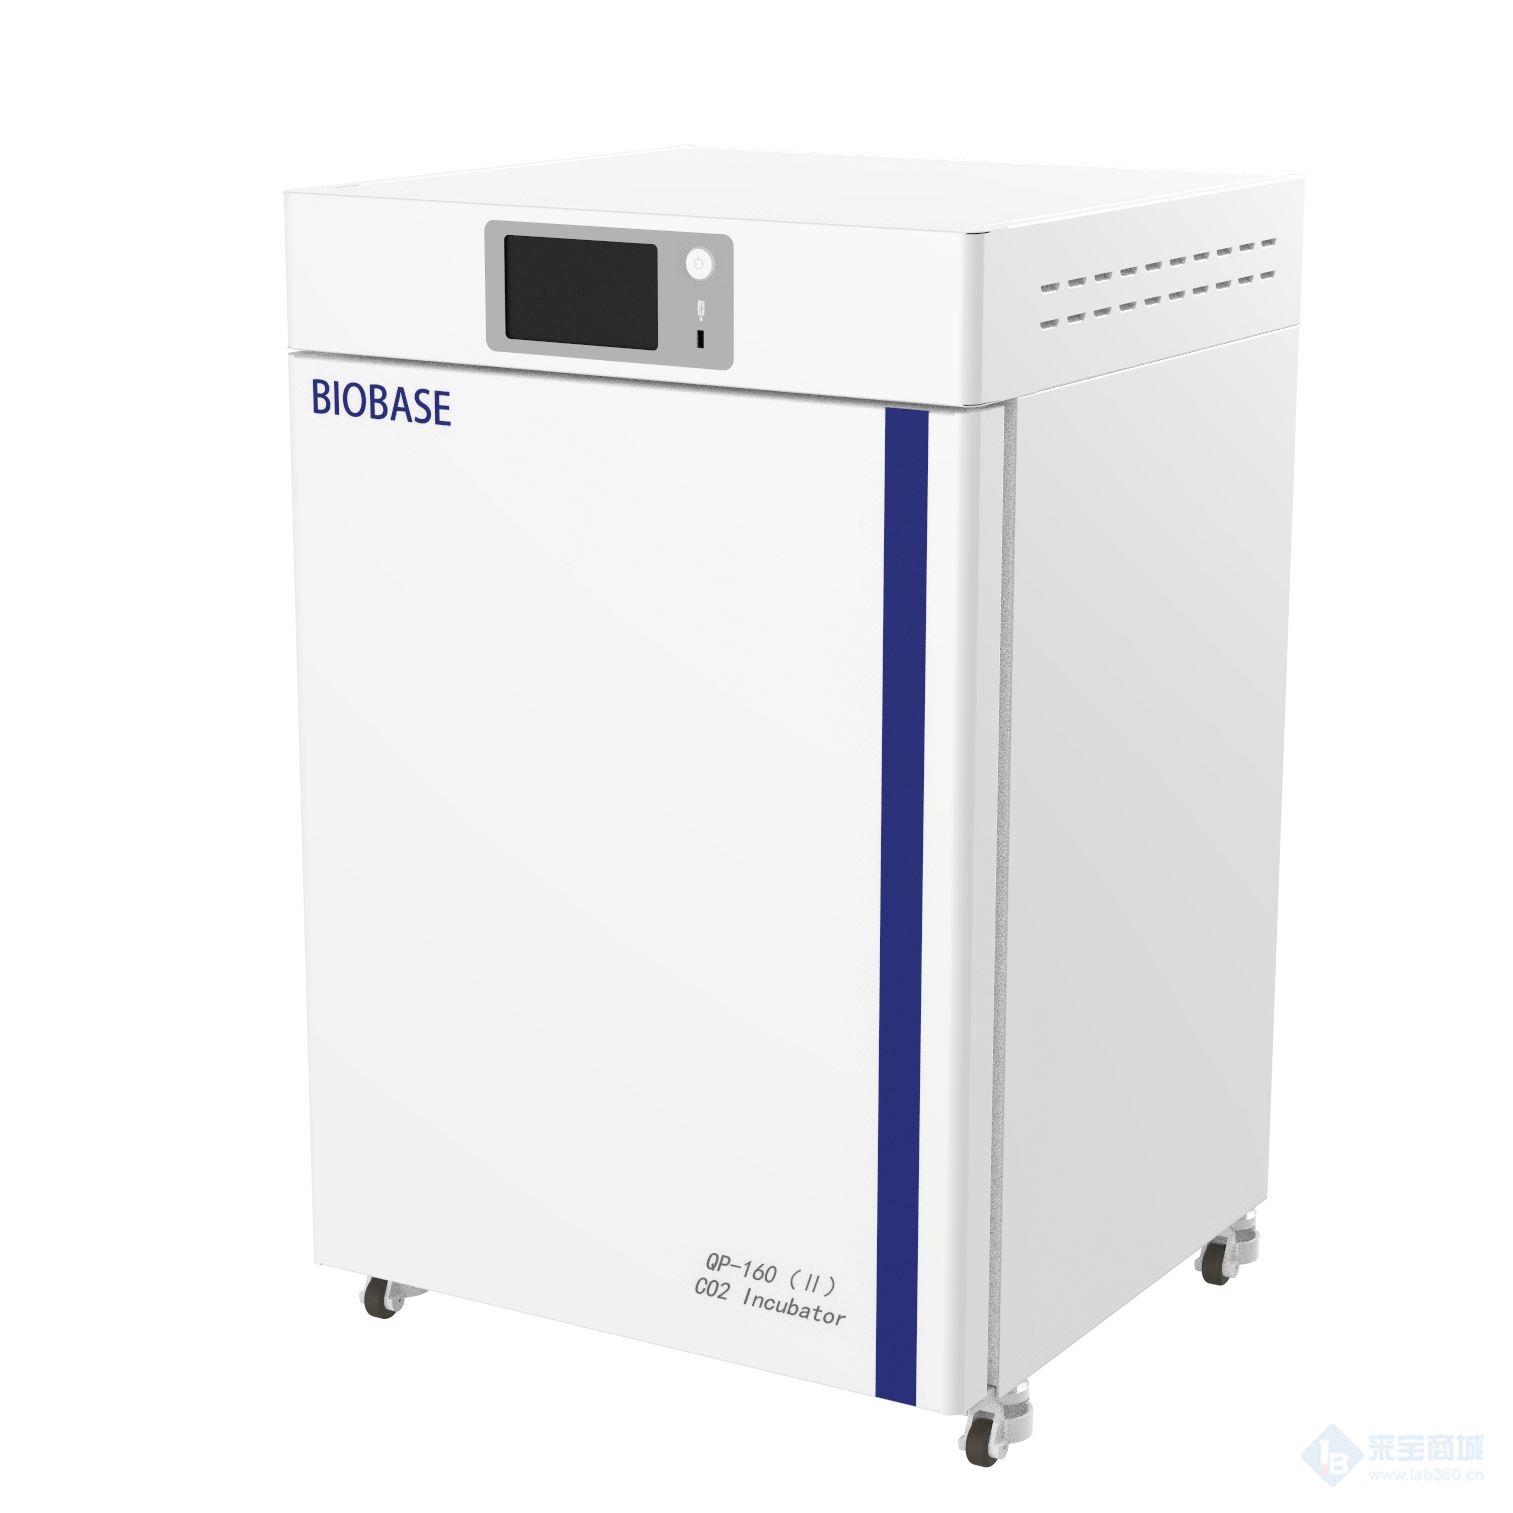 博科气套式二氧化碳培养箱QP-50 触摸屏 IR红外线传感器（VAISALA）,具有NIST校准证书